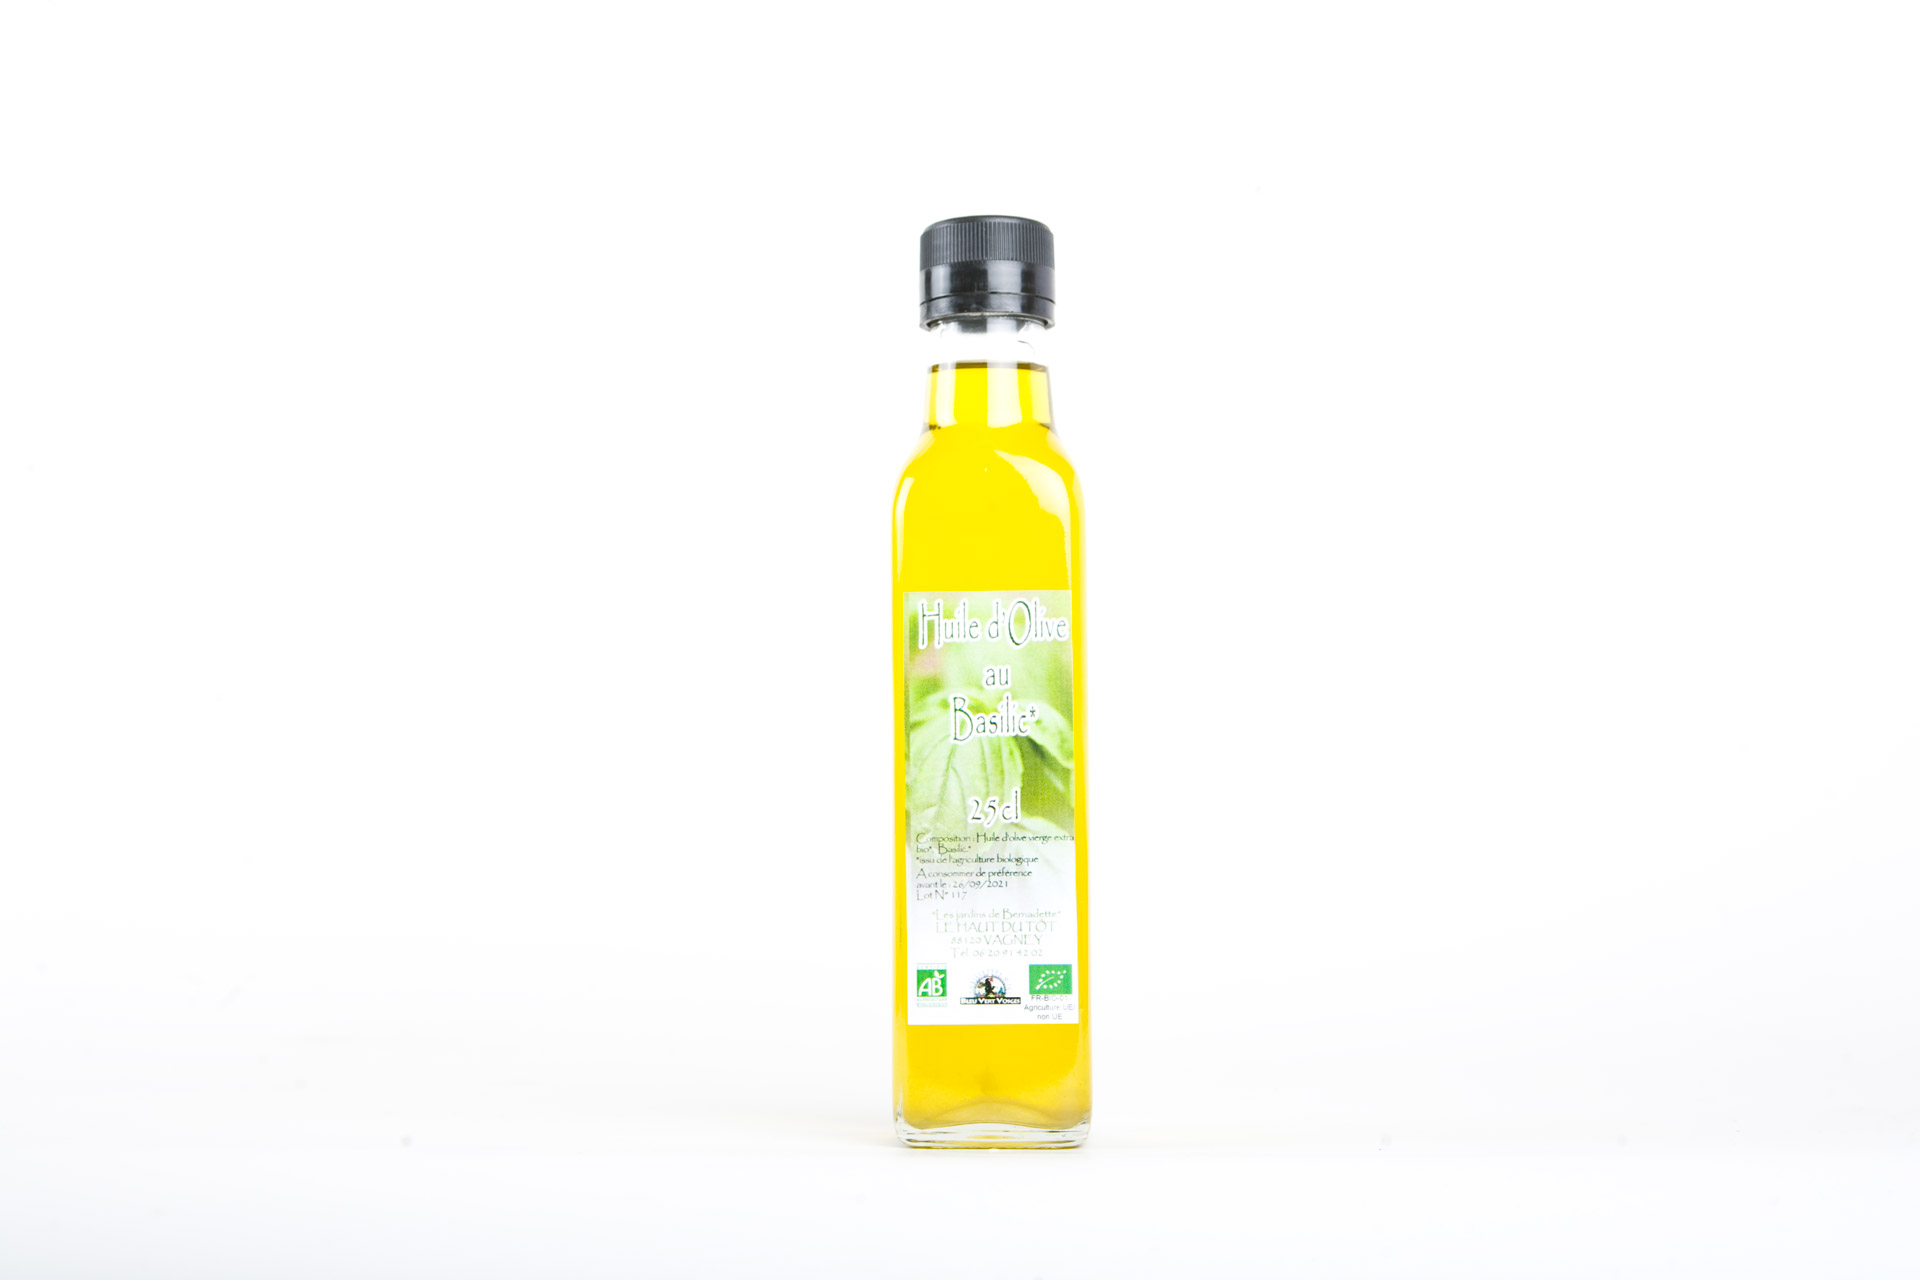 boutique huile d'olive : contenants